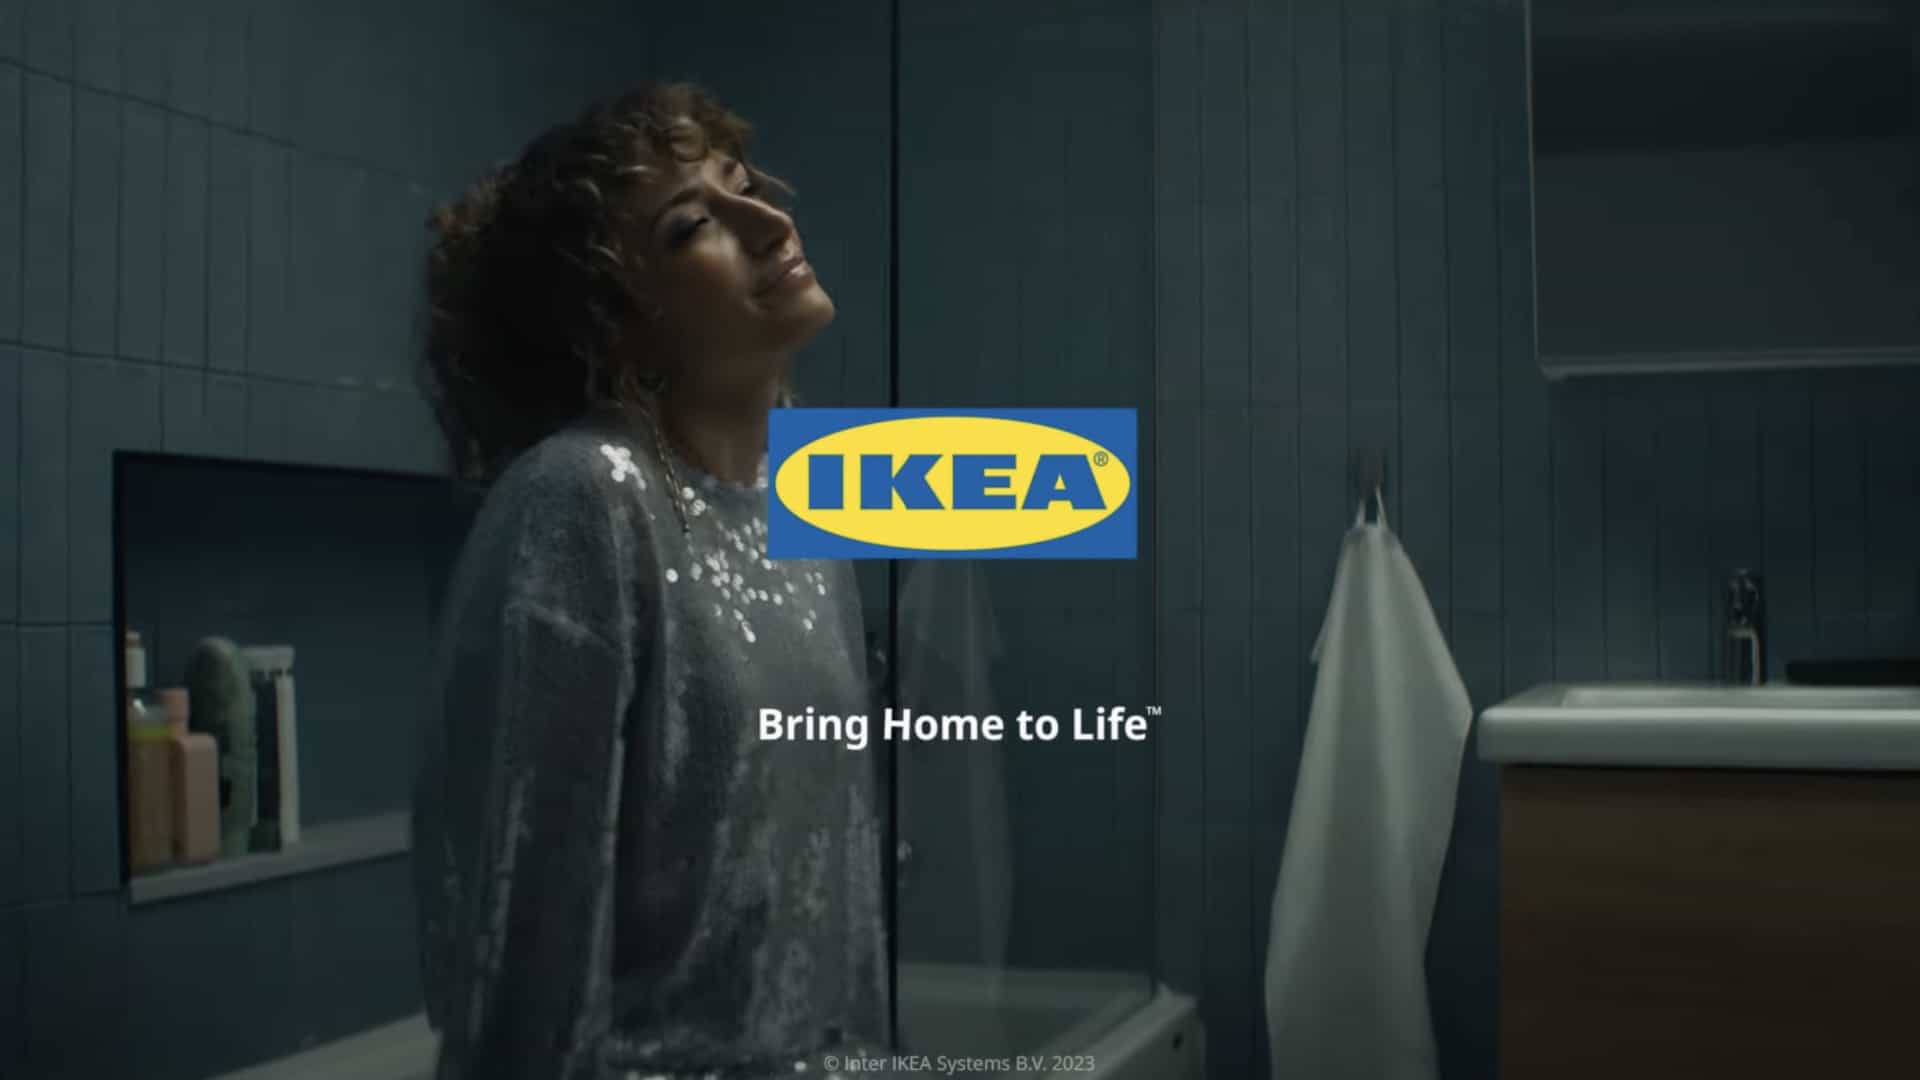 Ikea acaba de lanzar el anuncio navideño más refrescante que he visto en mucho tiempo